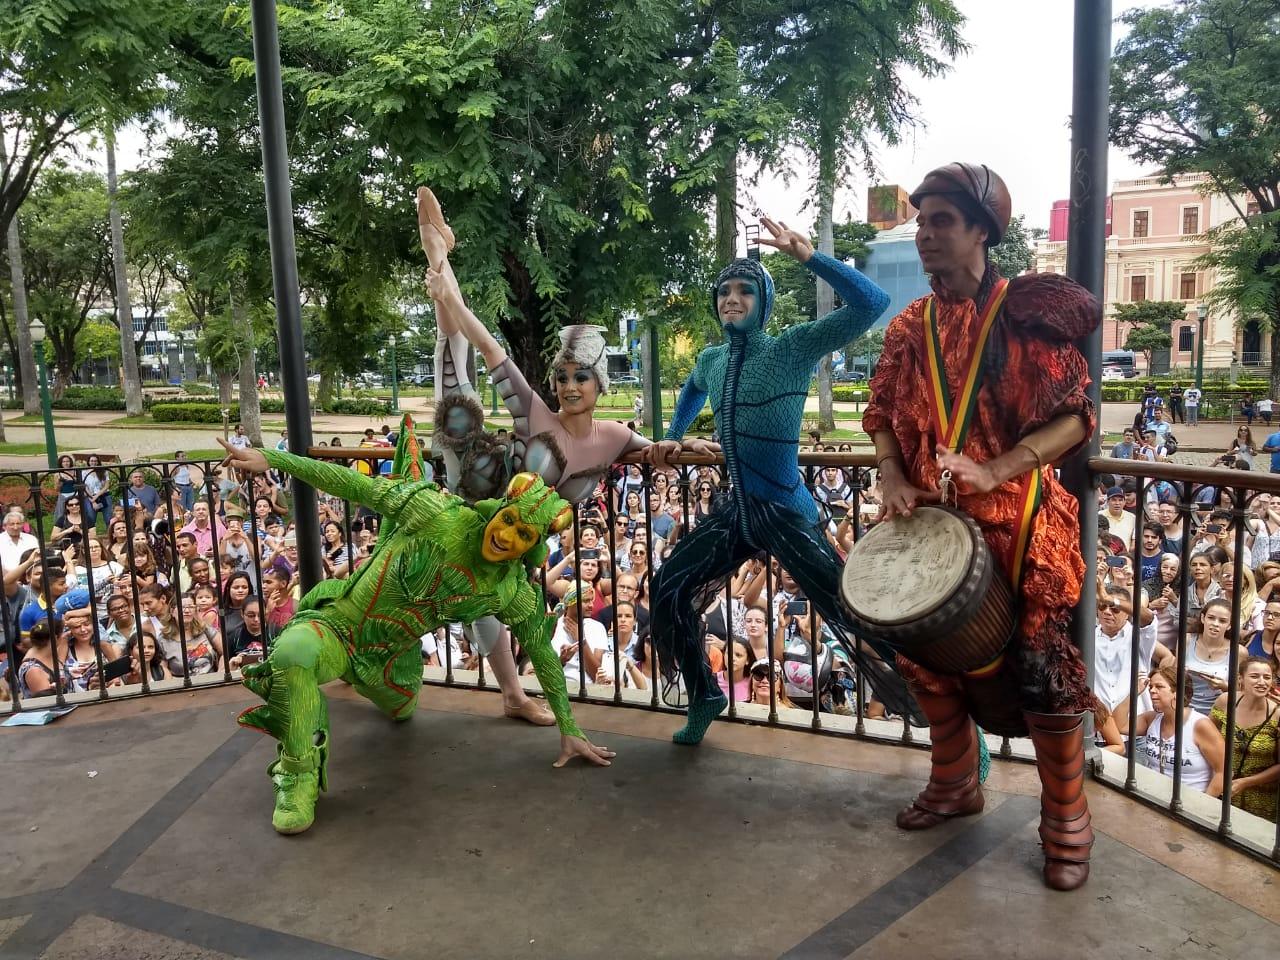 Apresentação de artistas do Cirque du Soleil na Praça da Liberdade
